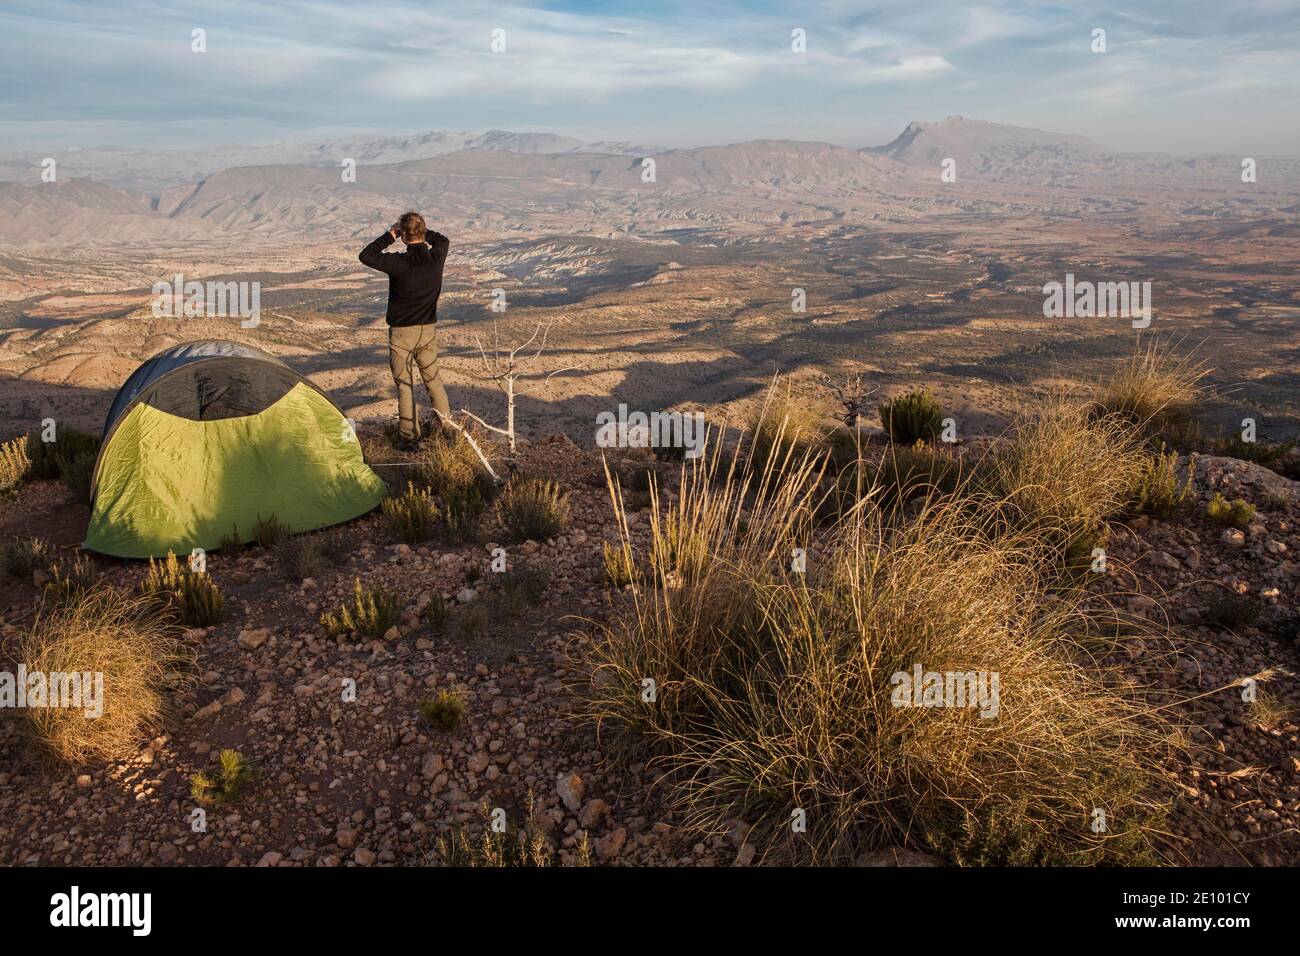 Der junge Mann betrachtet die Landschaft des Berges Jbel Bou Naceur in der Provinz Sedru von einem Plateau in der Nähe der Region Fez-Mequinez in seinem Lager Stockfoto